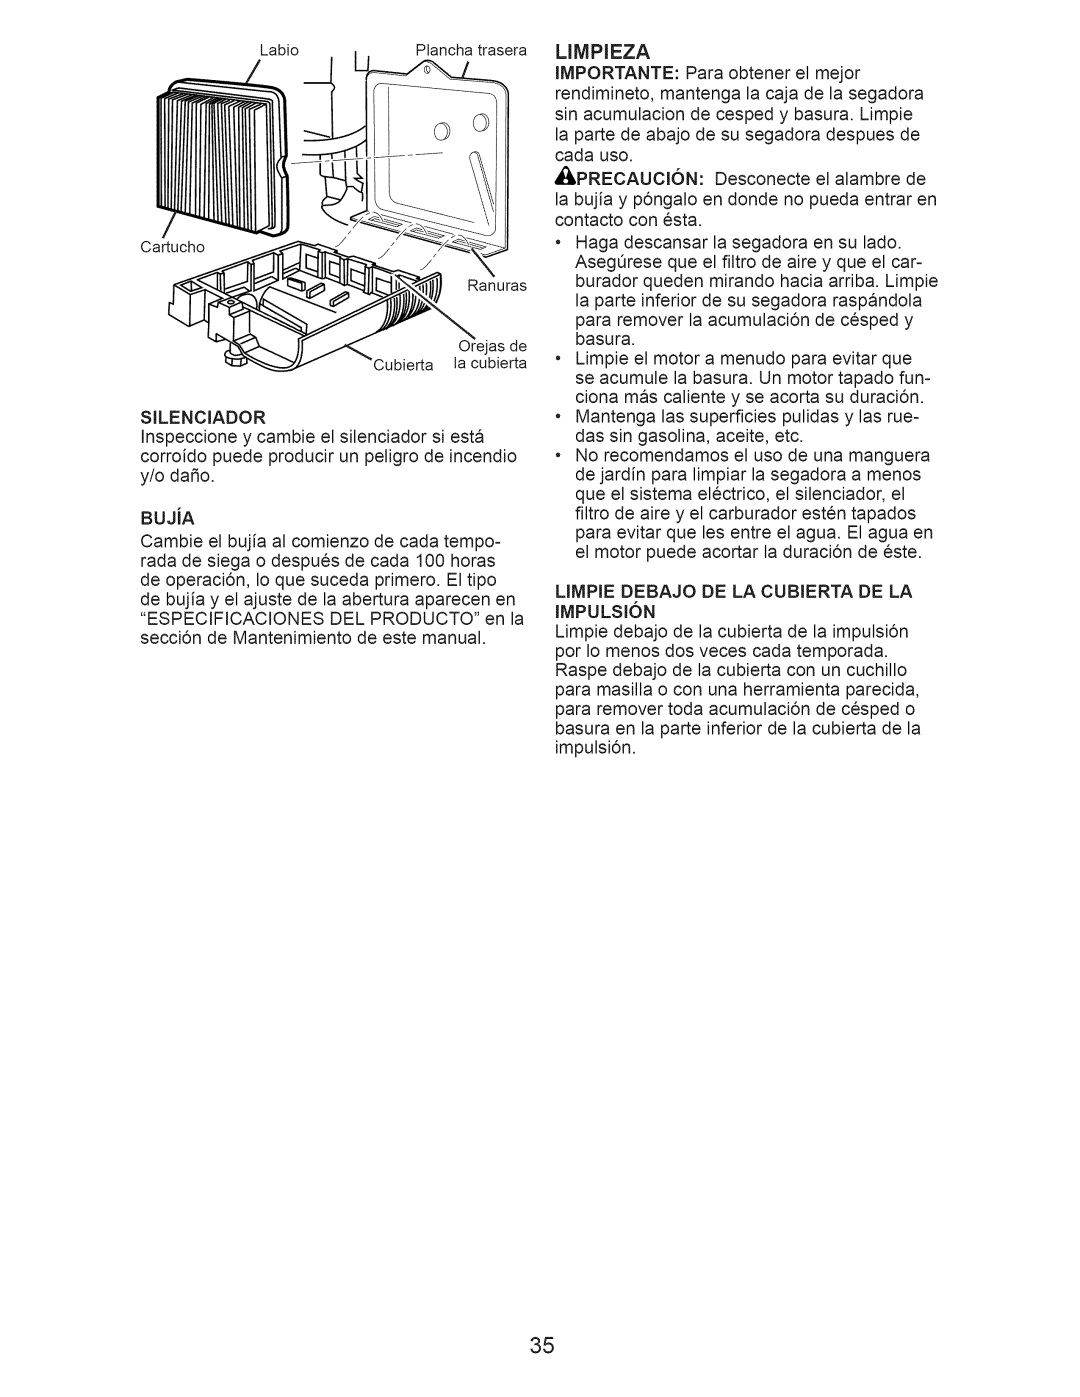 Craftsman 917.374062 manual Limpieza, LIMPIE DEBAJO DE LA CUBIERTA DE LA IMPULSI6N 